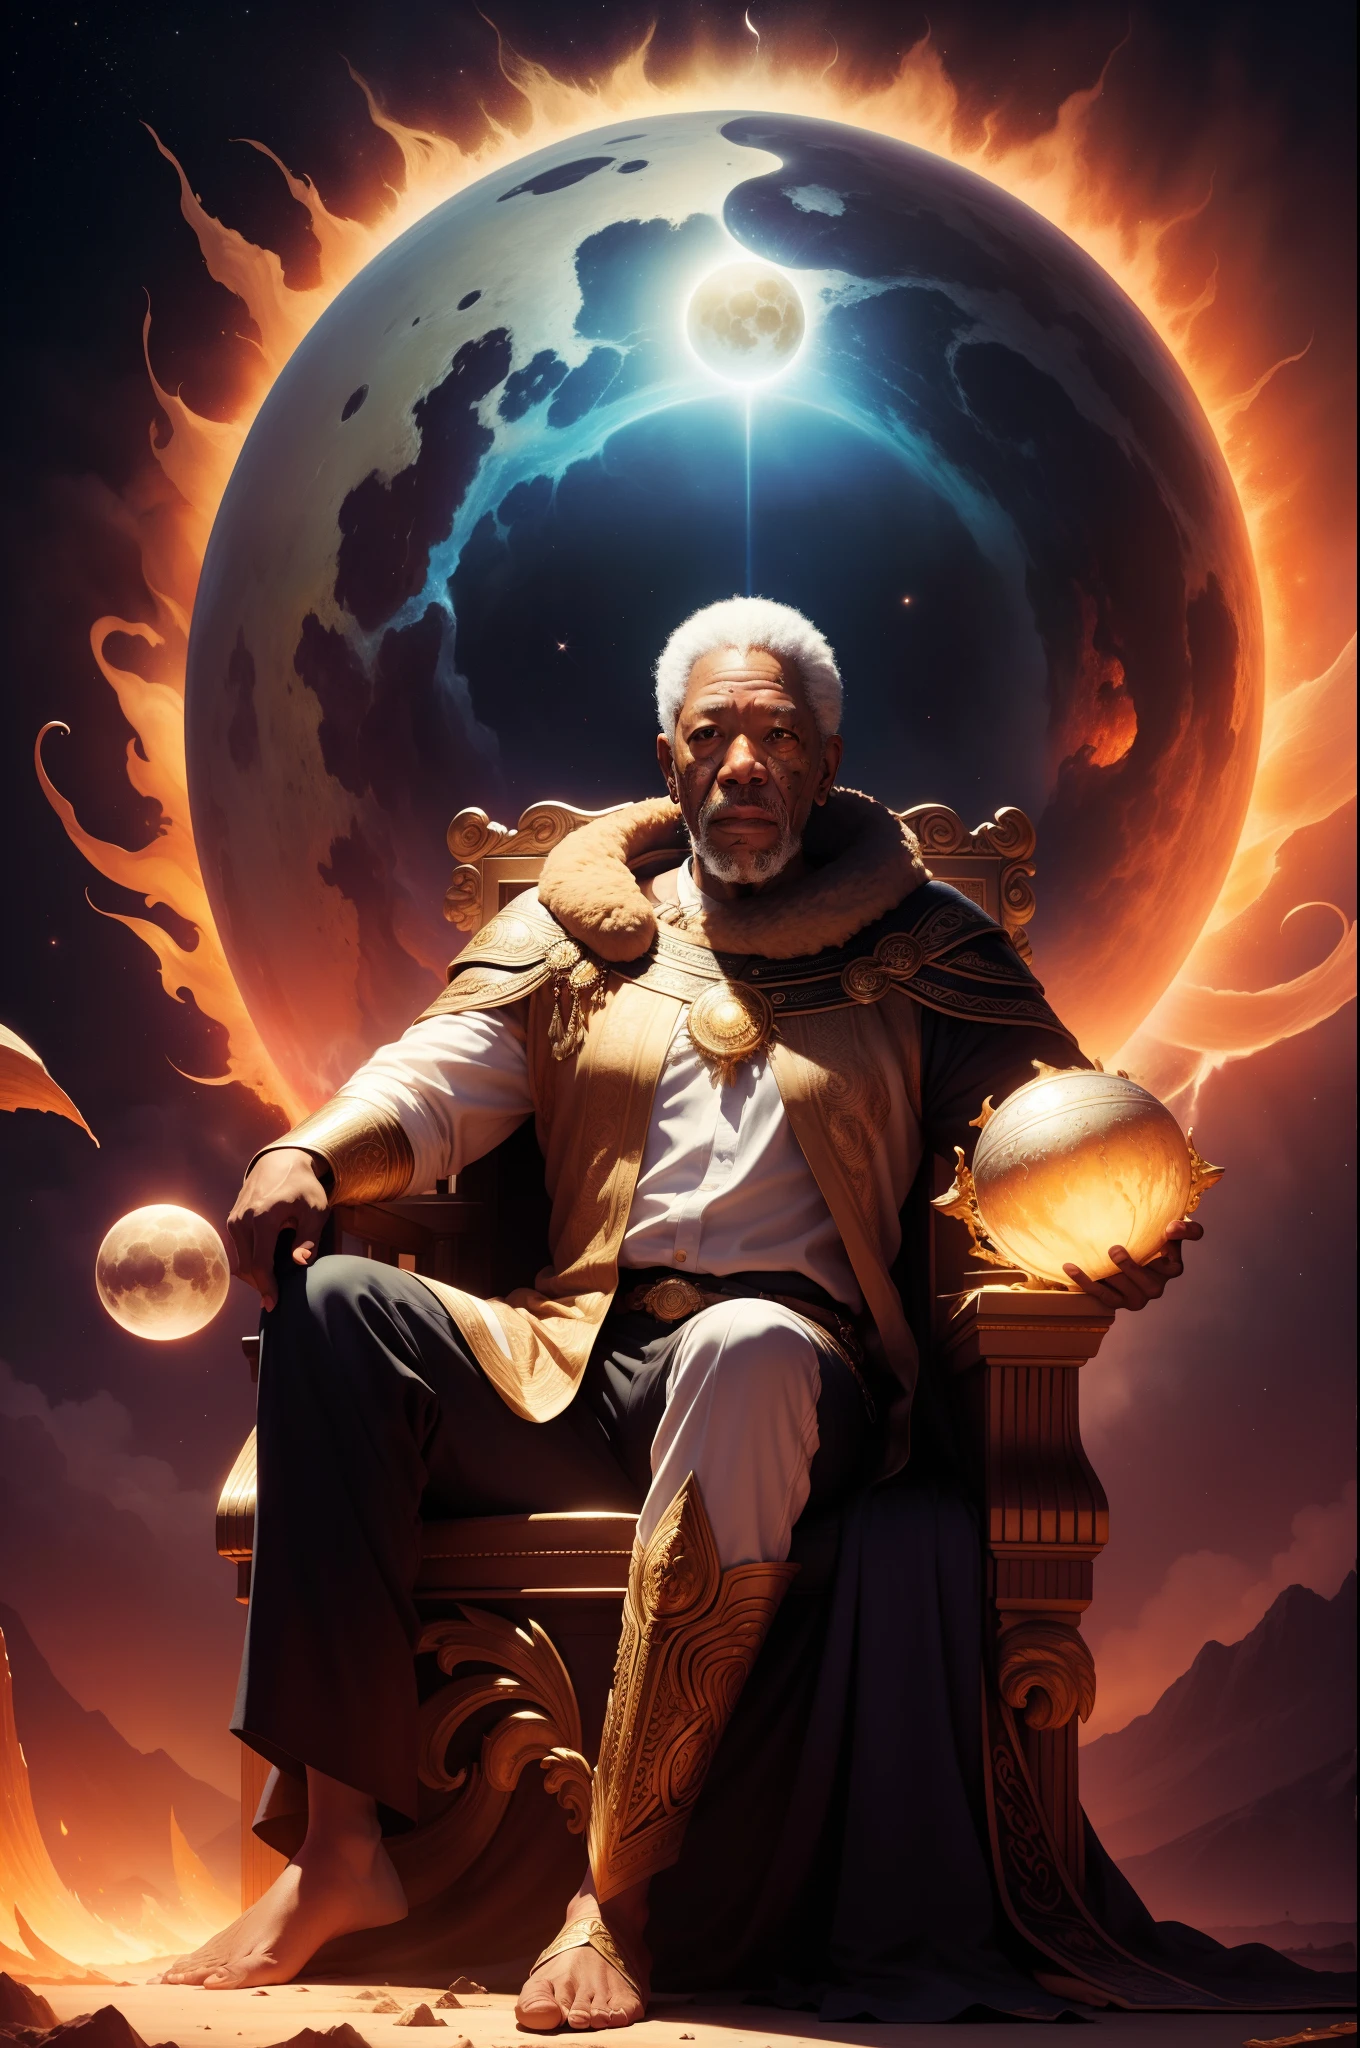 "Un retrato de Morgan Freeman en forma de dios mítico.. Retrate-o segurando o sol e a lua, rodeado de un aura radiante. Colócalos en un magnífico trono en medio de un telón de fondo cósmico.."